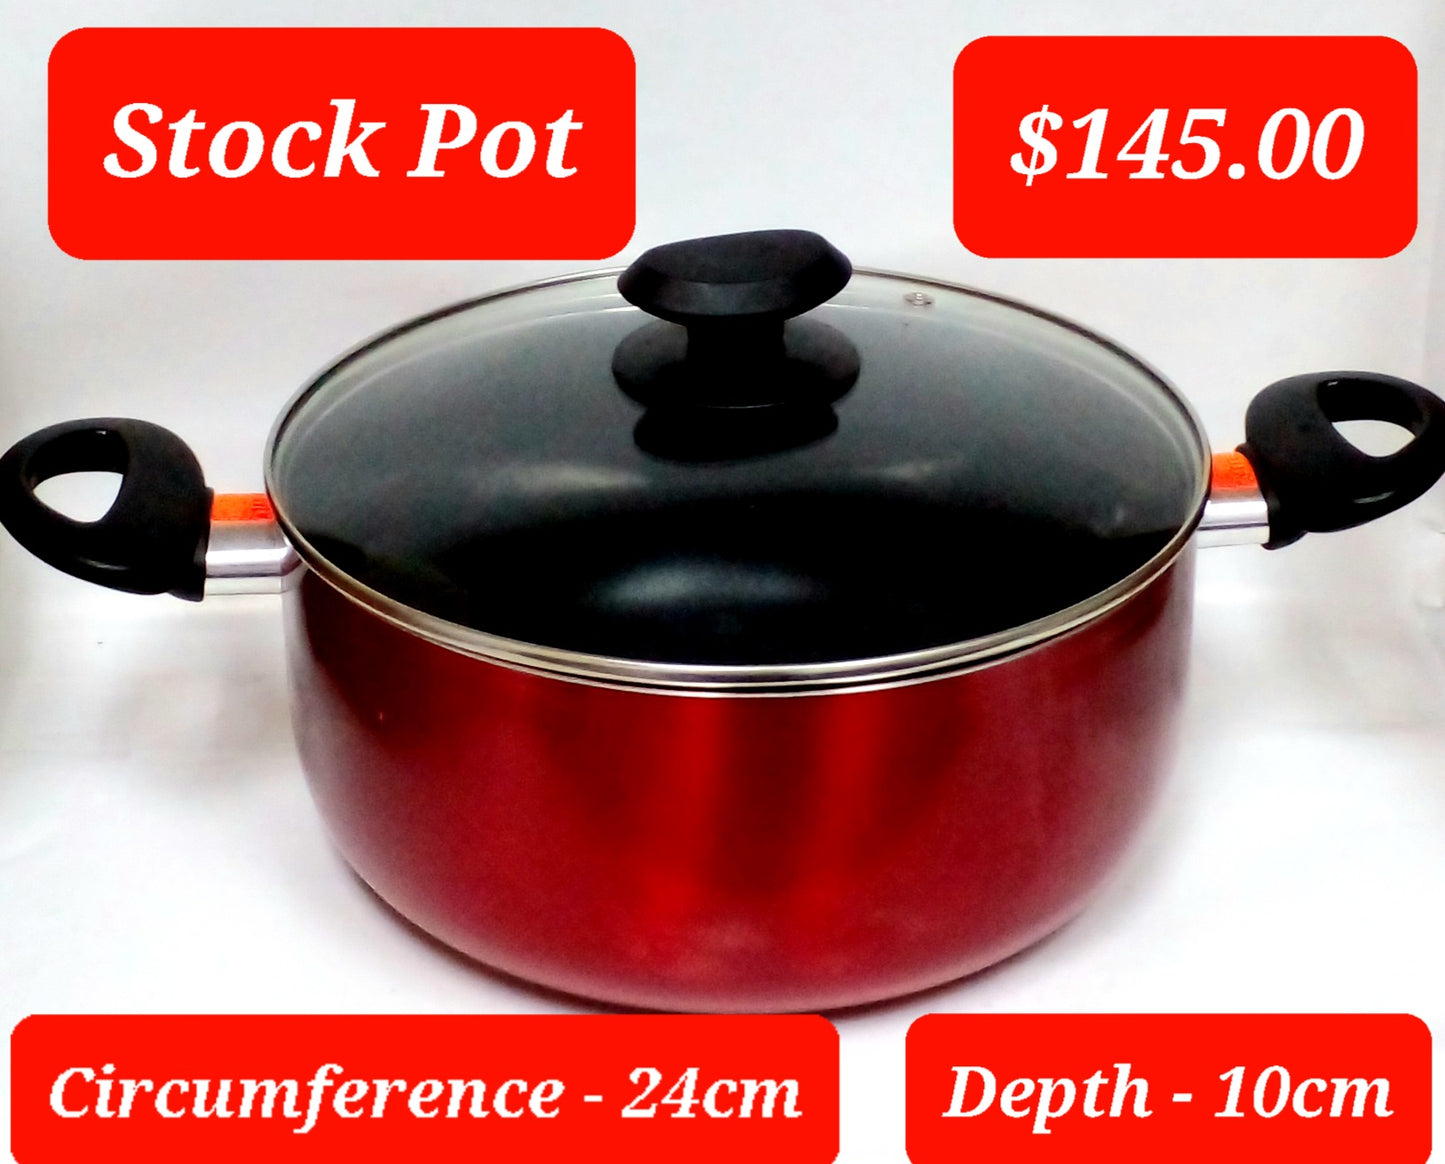 Stock pot